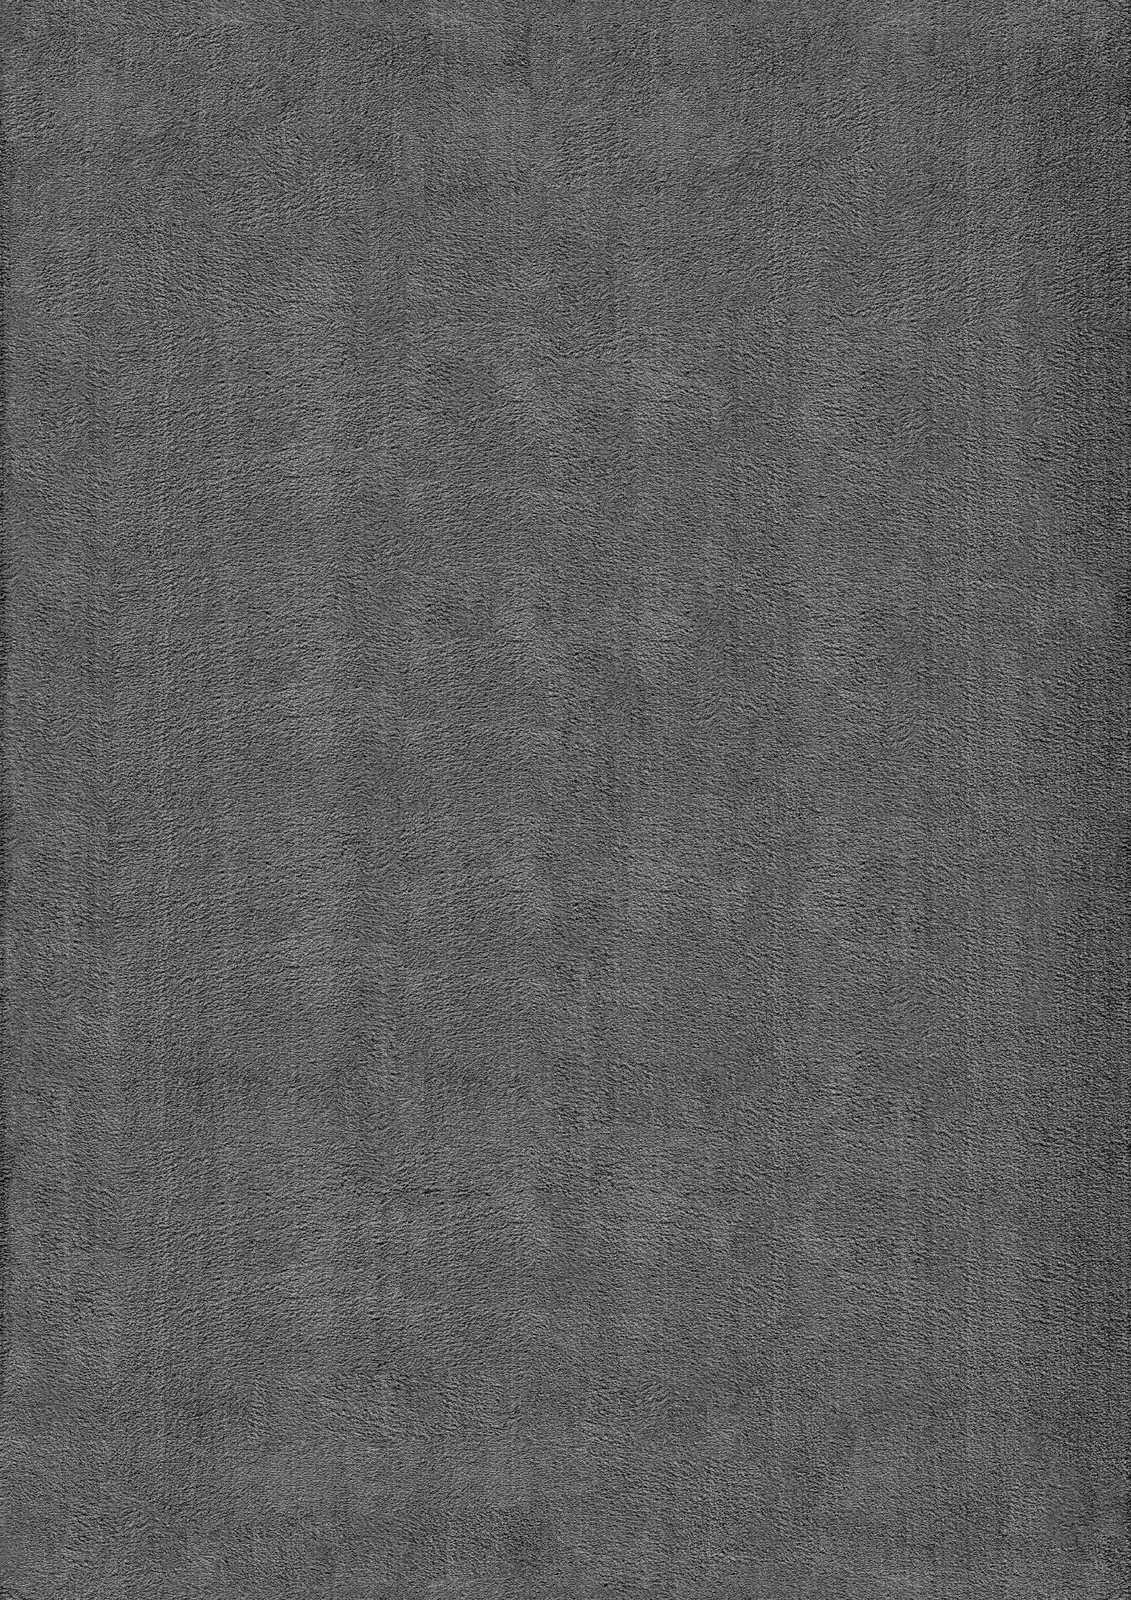             Flauschiger Hochflor Teppich in Anthrazit – 110 x 60 cm
        